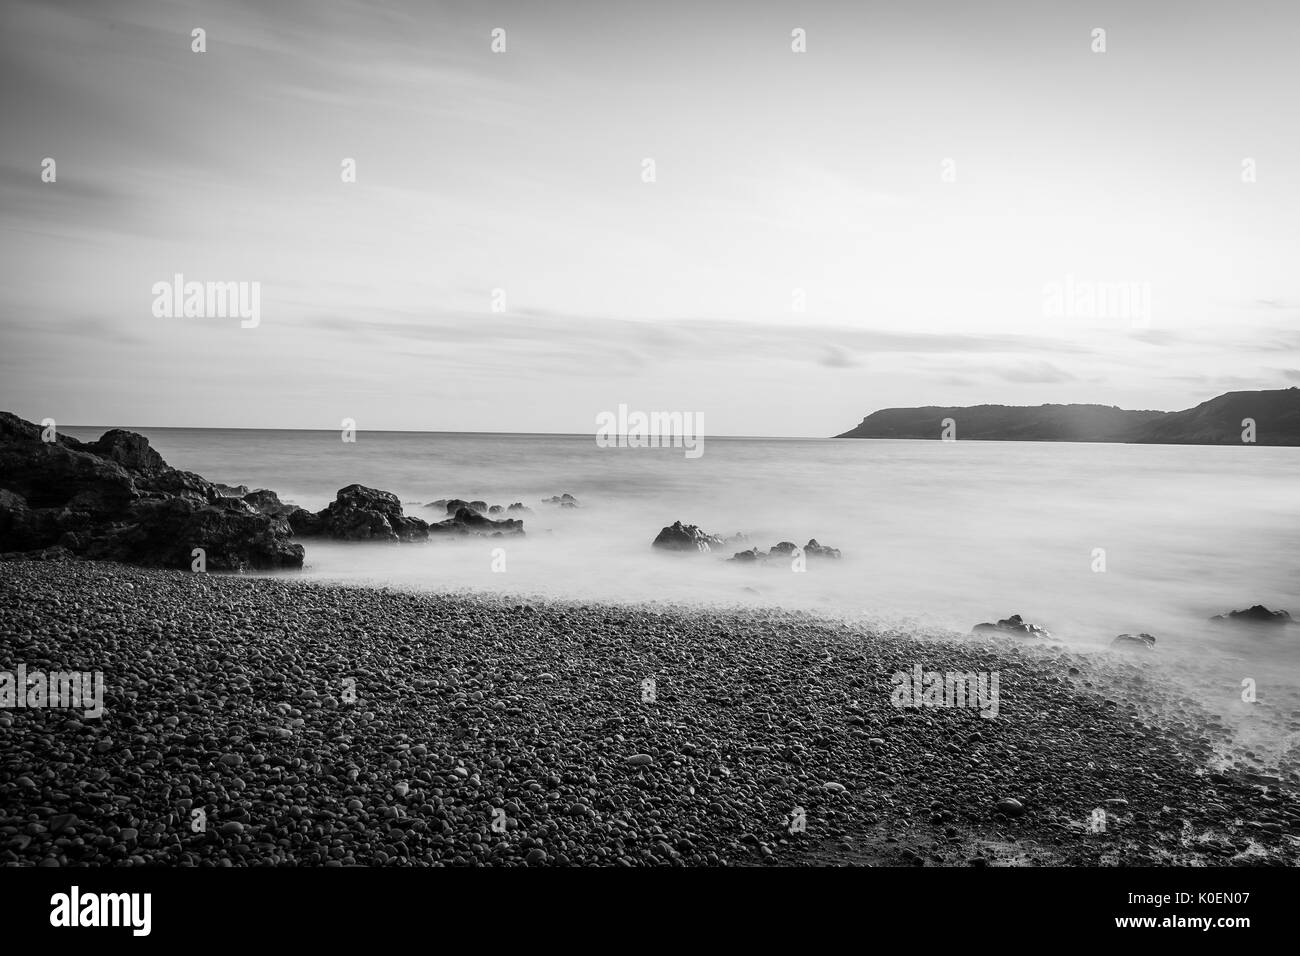 Un costiere esposizione lunga scena con il sole, il mare di sabbia e roccia in bianco e nero, nei pressi di Caswell Bay sulla Penisola di Gower in Galles, Regno Unito Foto Stock